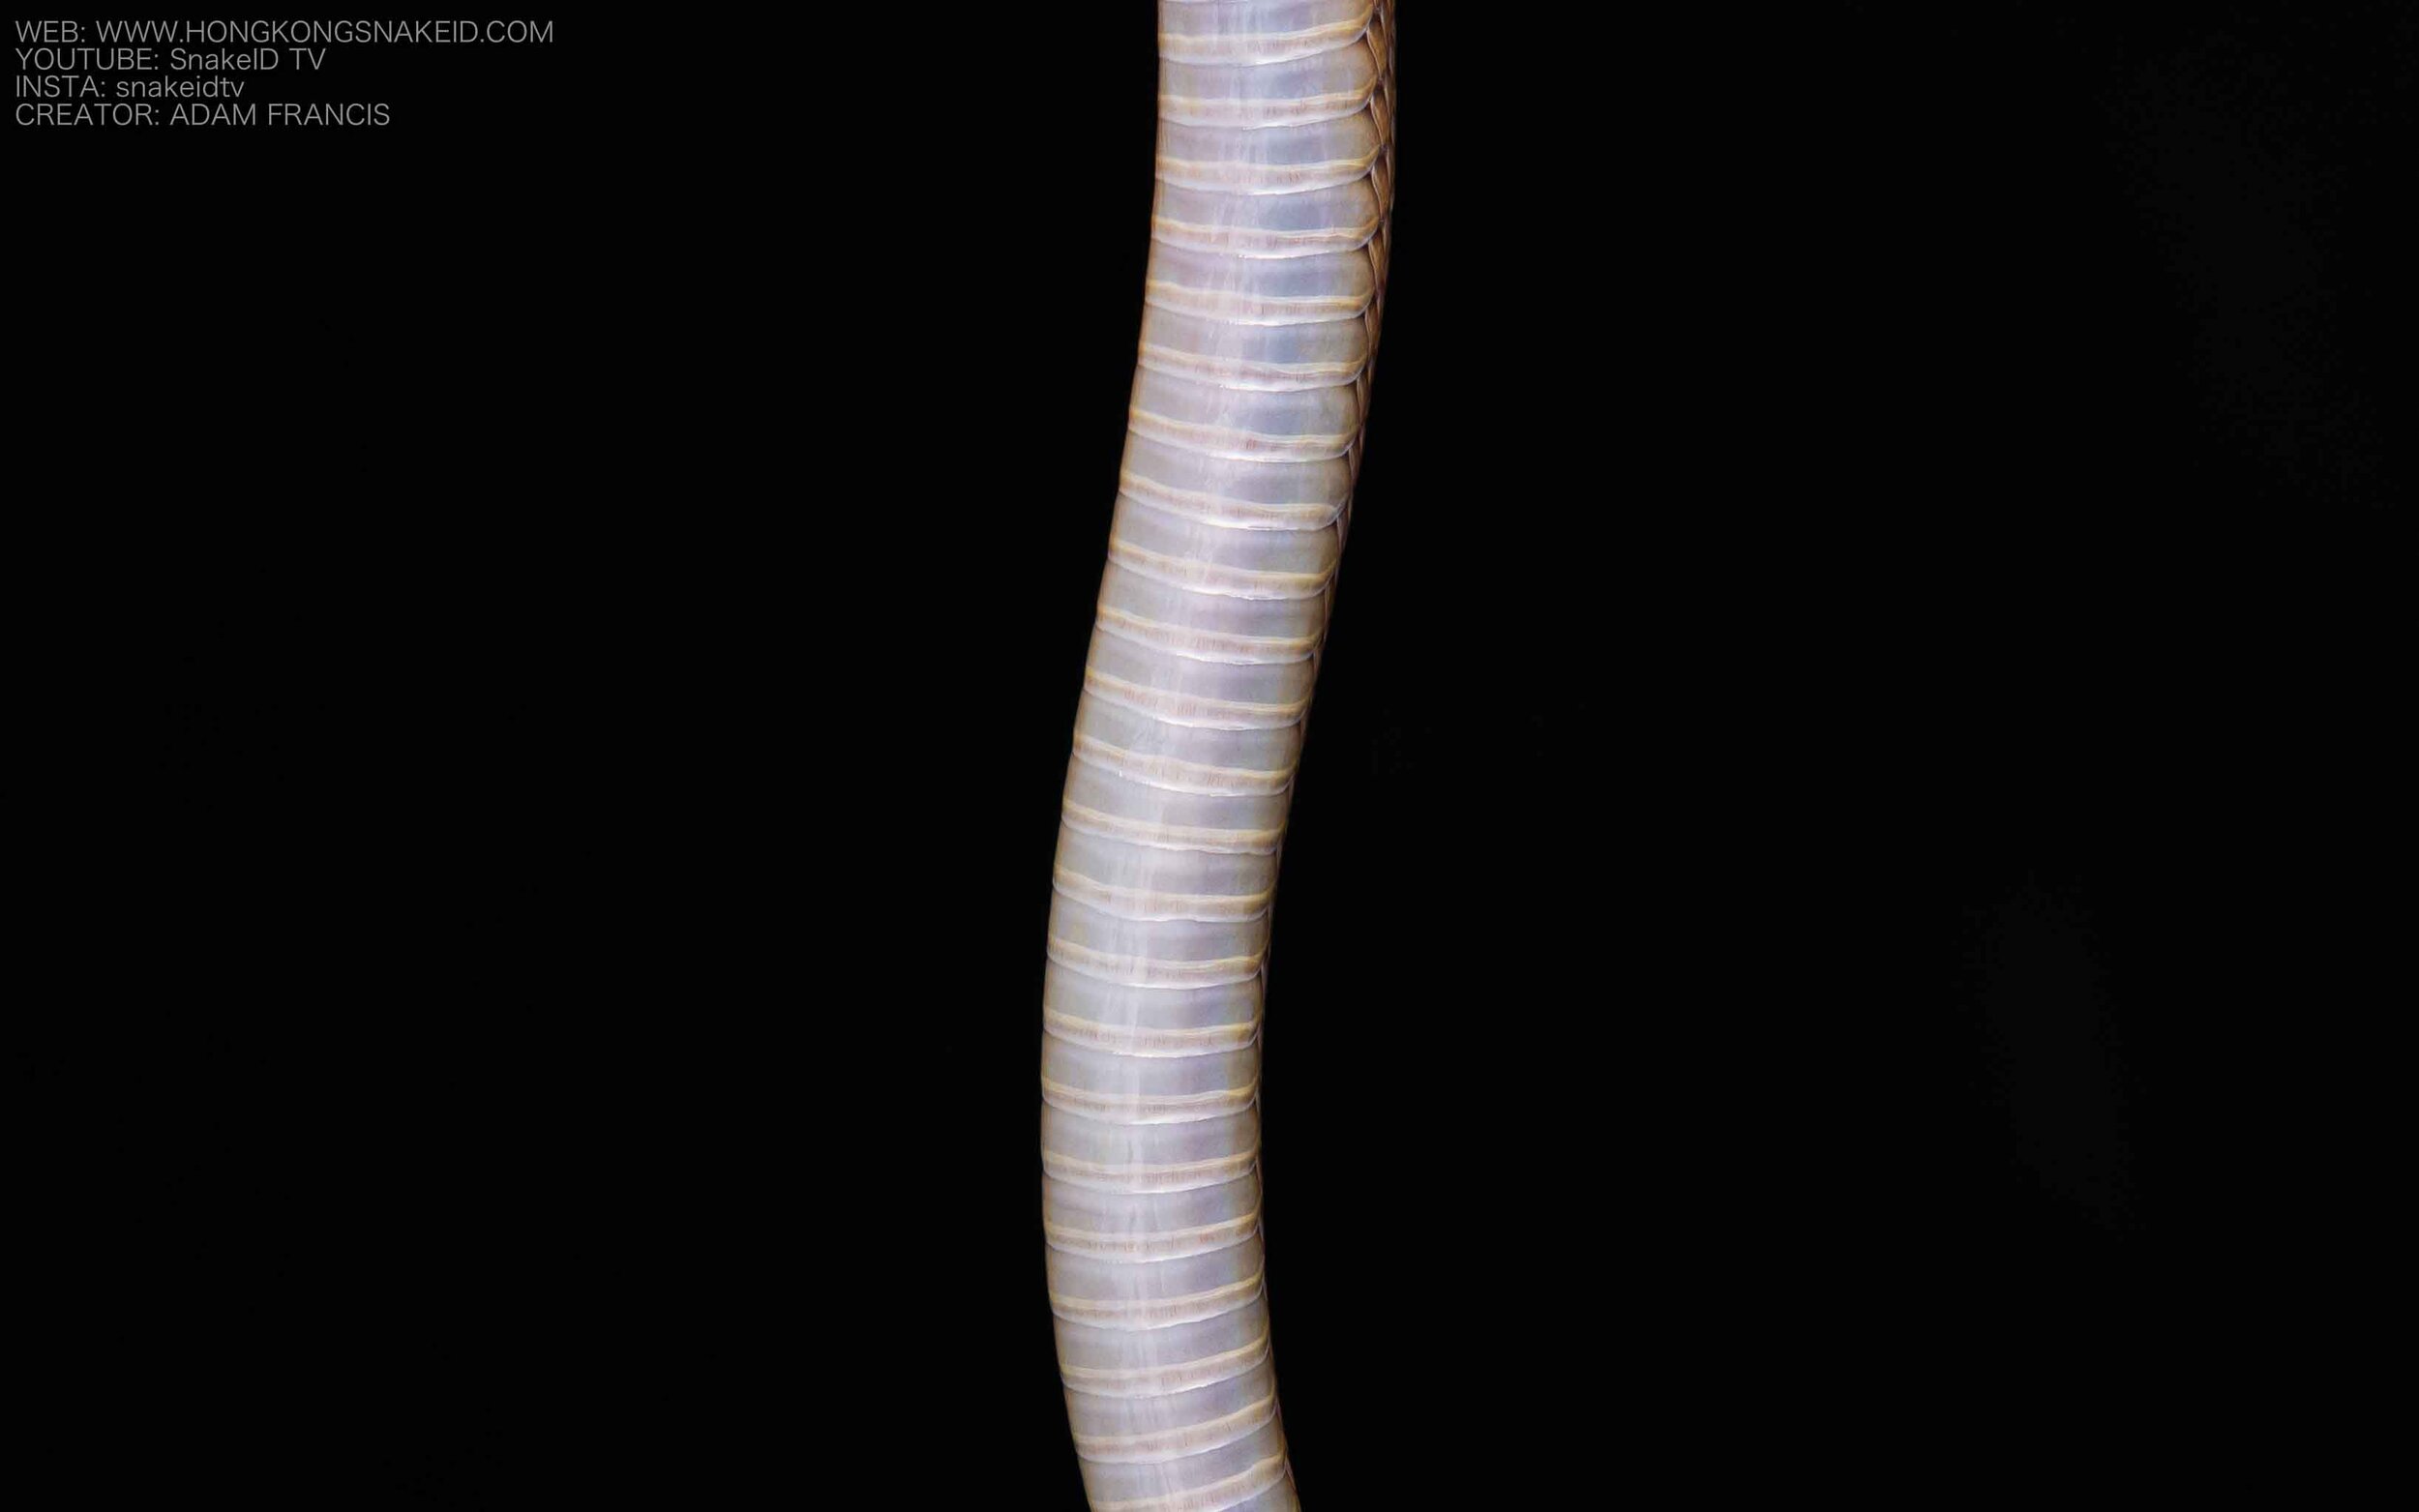 Burrowing Rufous Snake - Achalinus rufescens